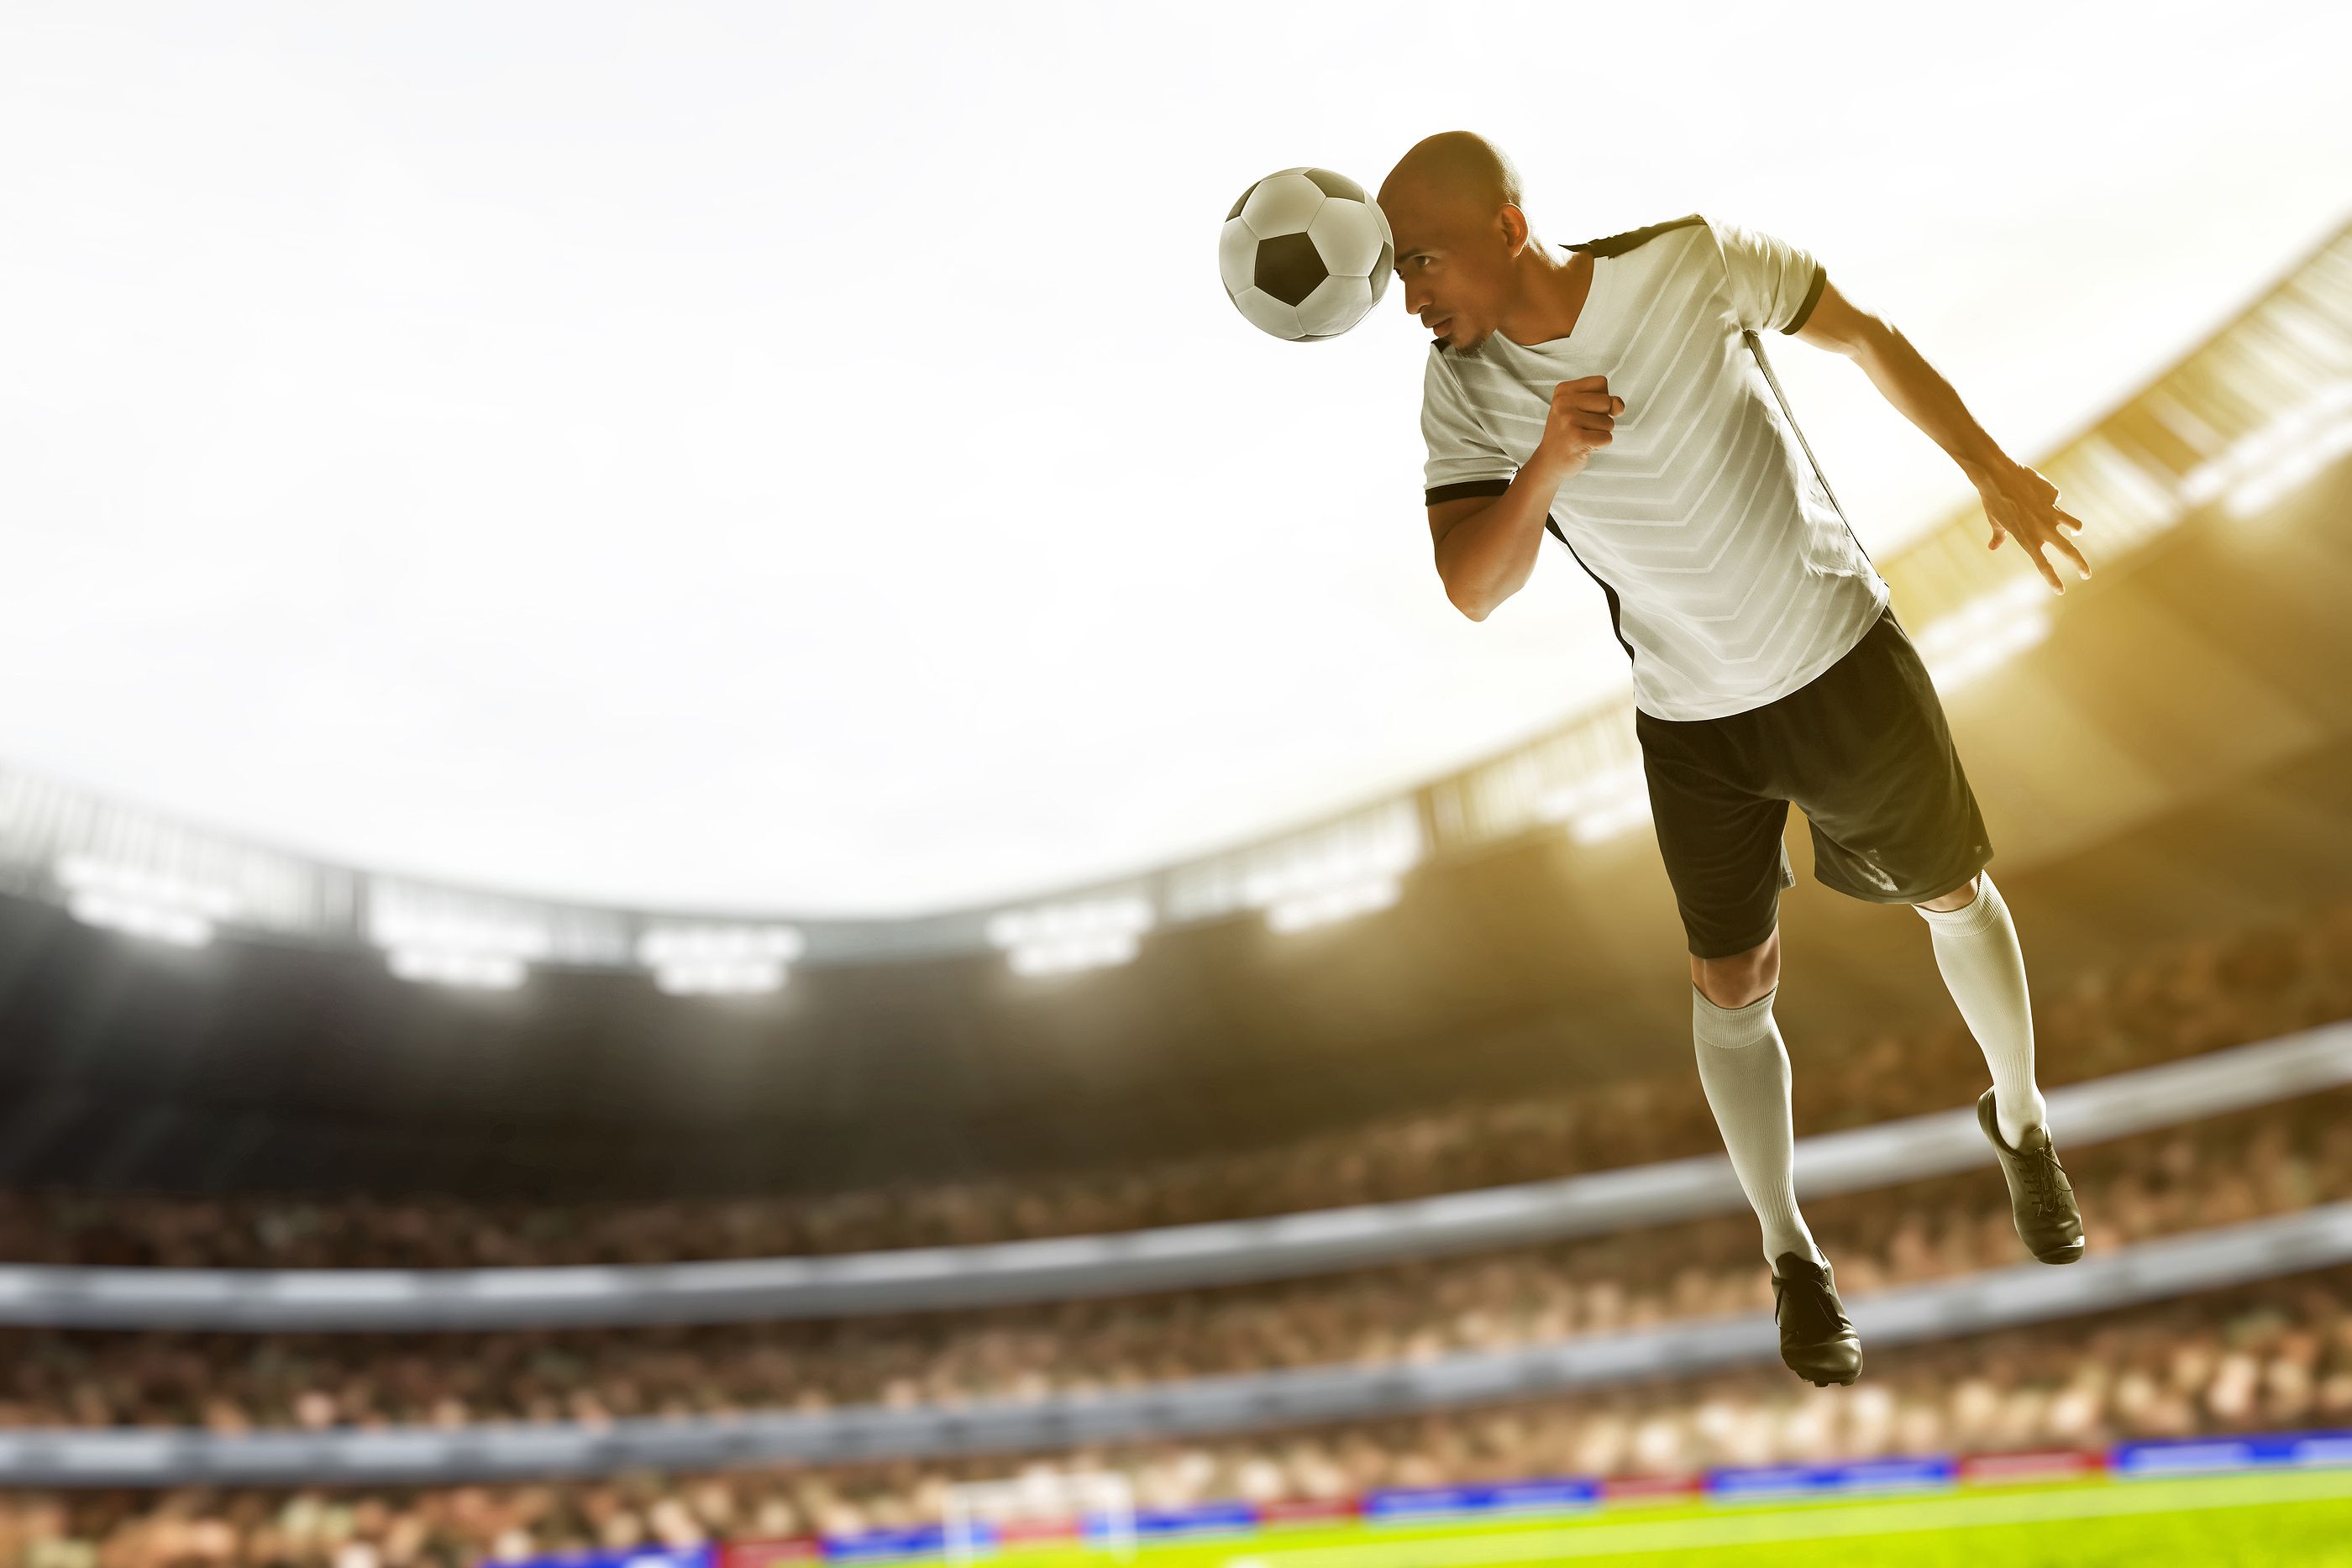 Un estudio relaciona sufrir golpes en la cabeza en el deporte profesional con desarrollar demencia